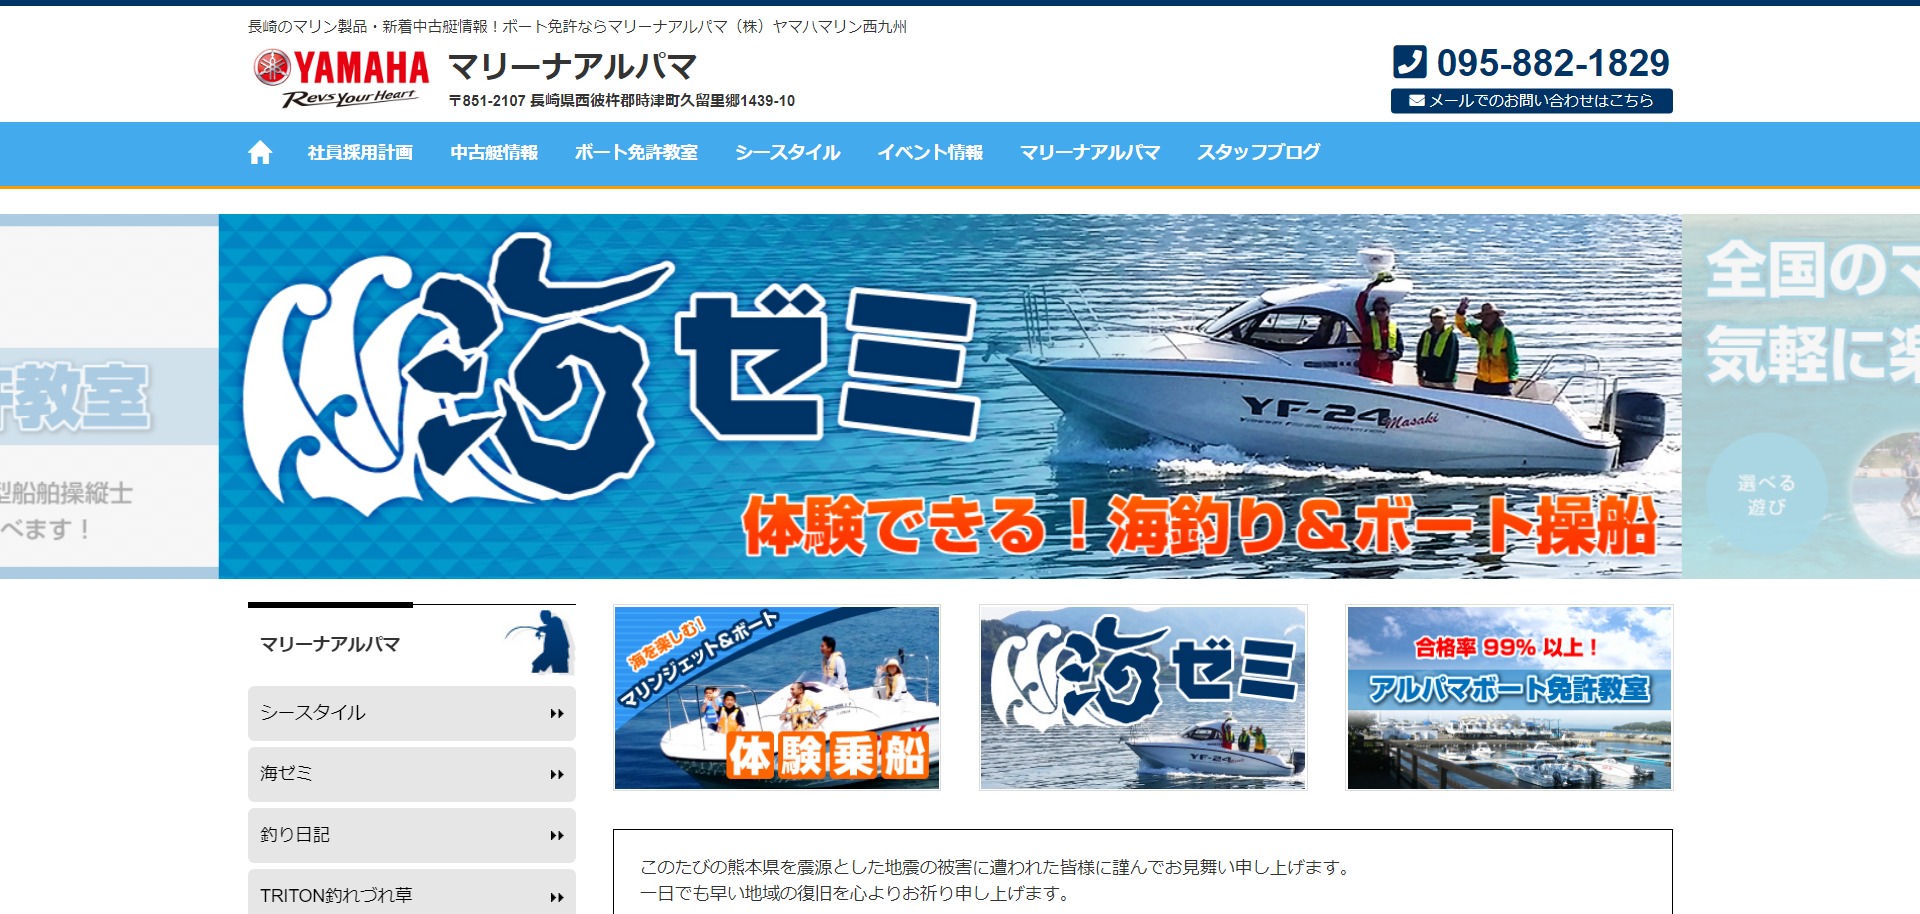 熊本県 宇土マリーナで小型船舶免許を取得